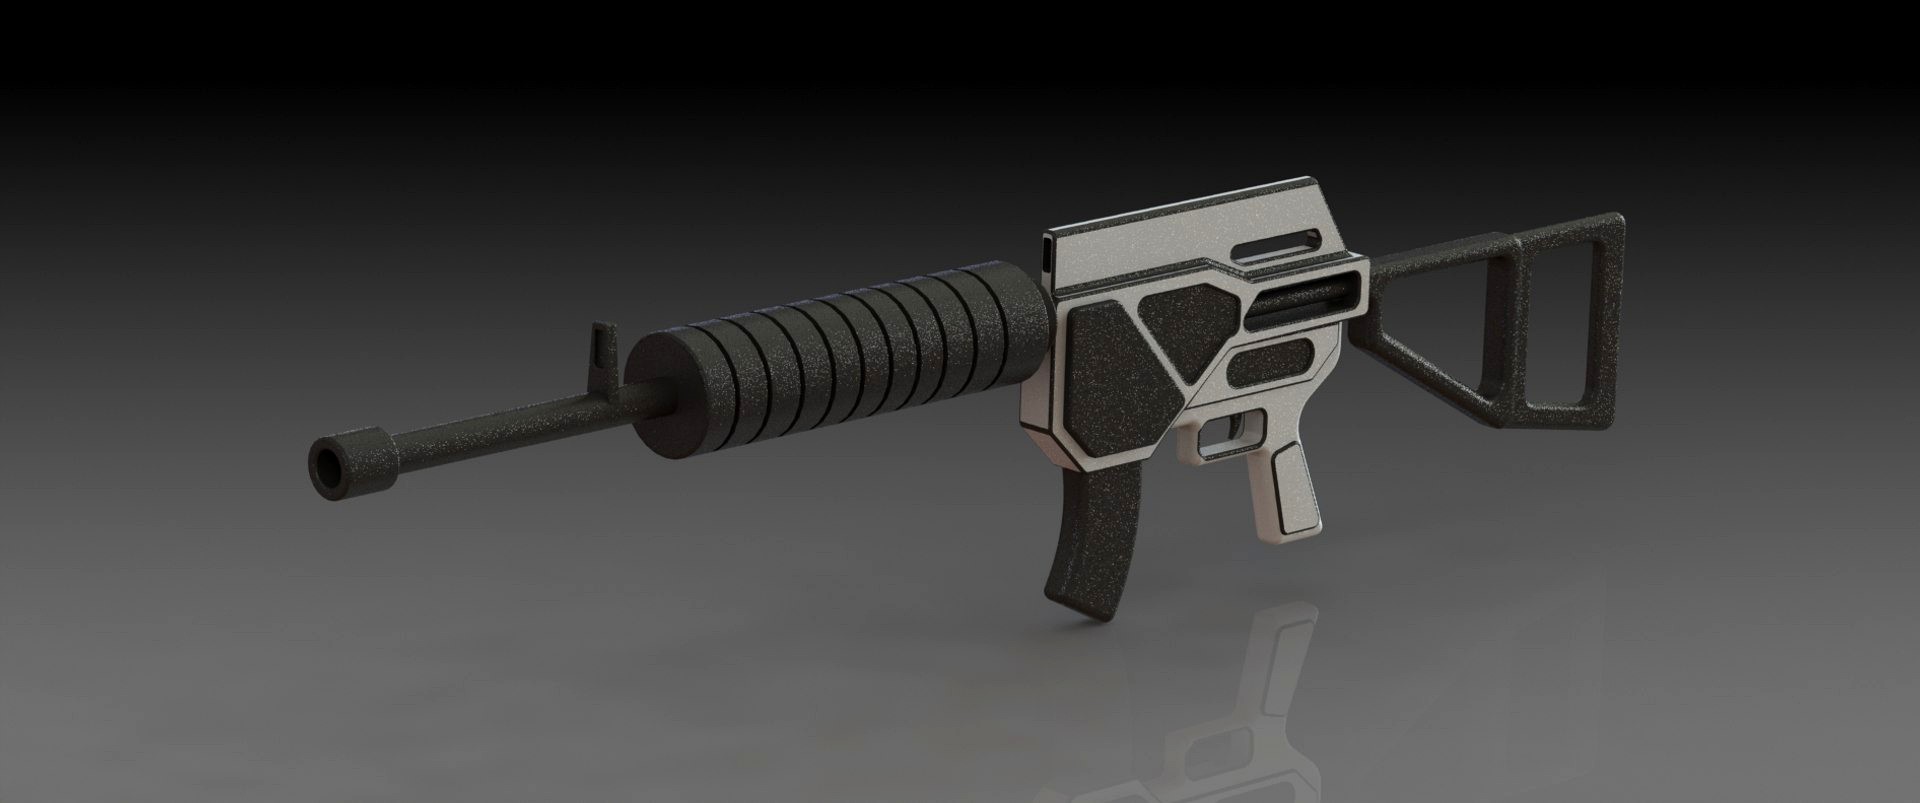 Conceptual gun 2